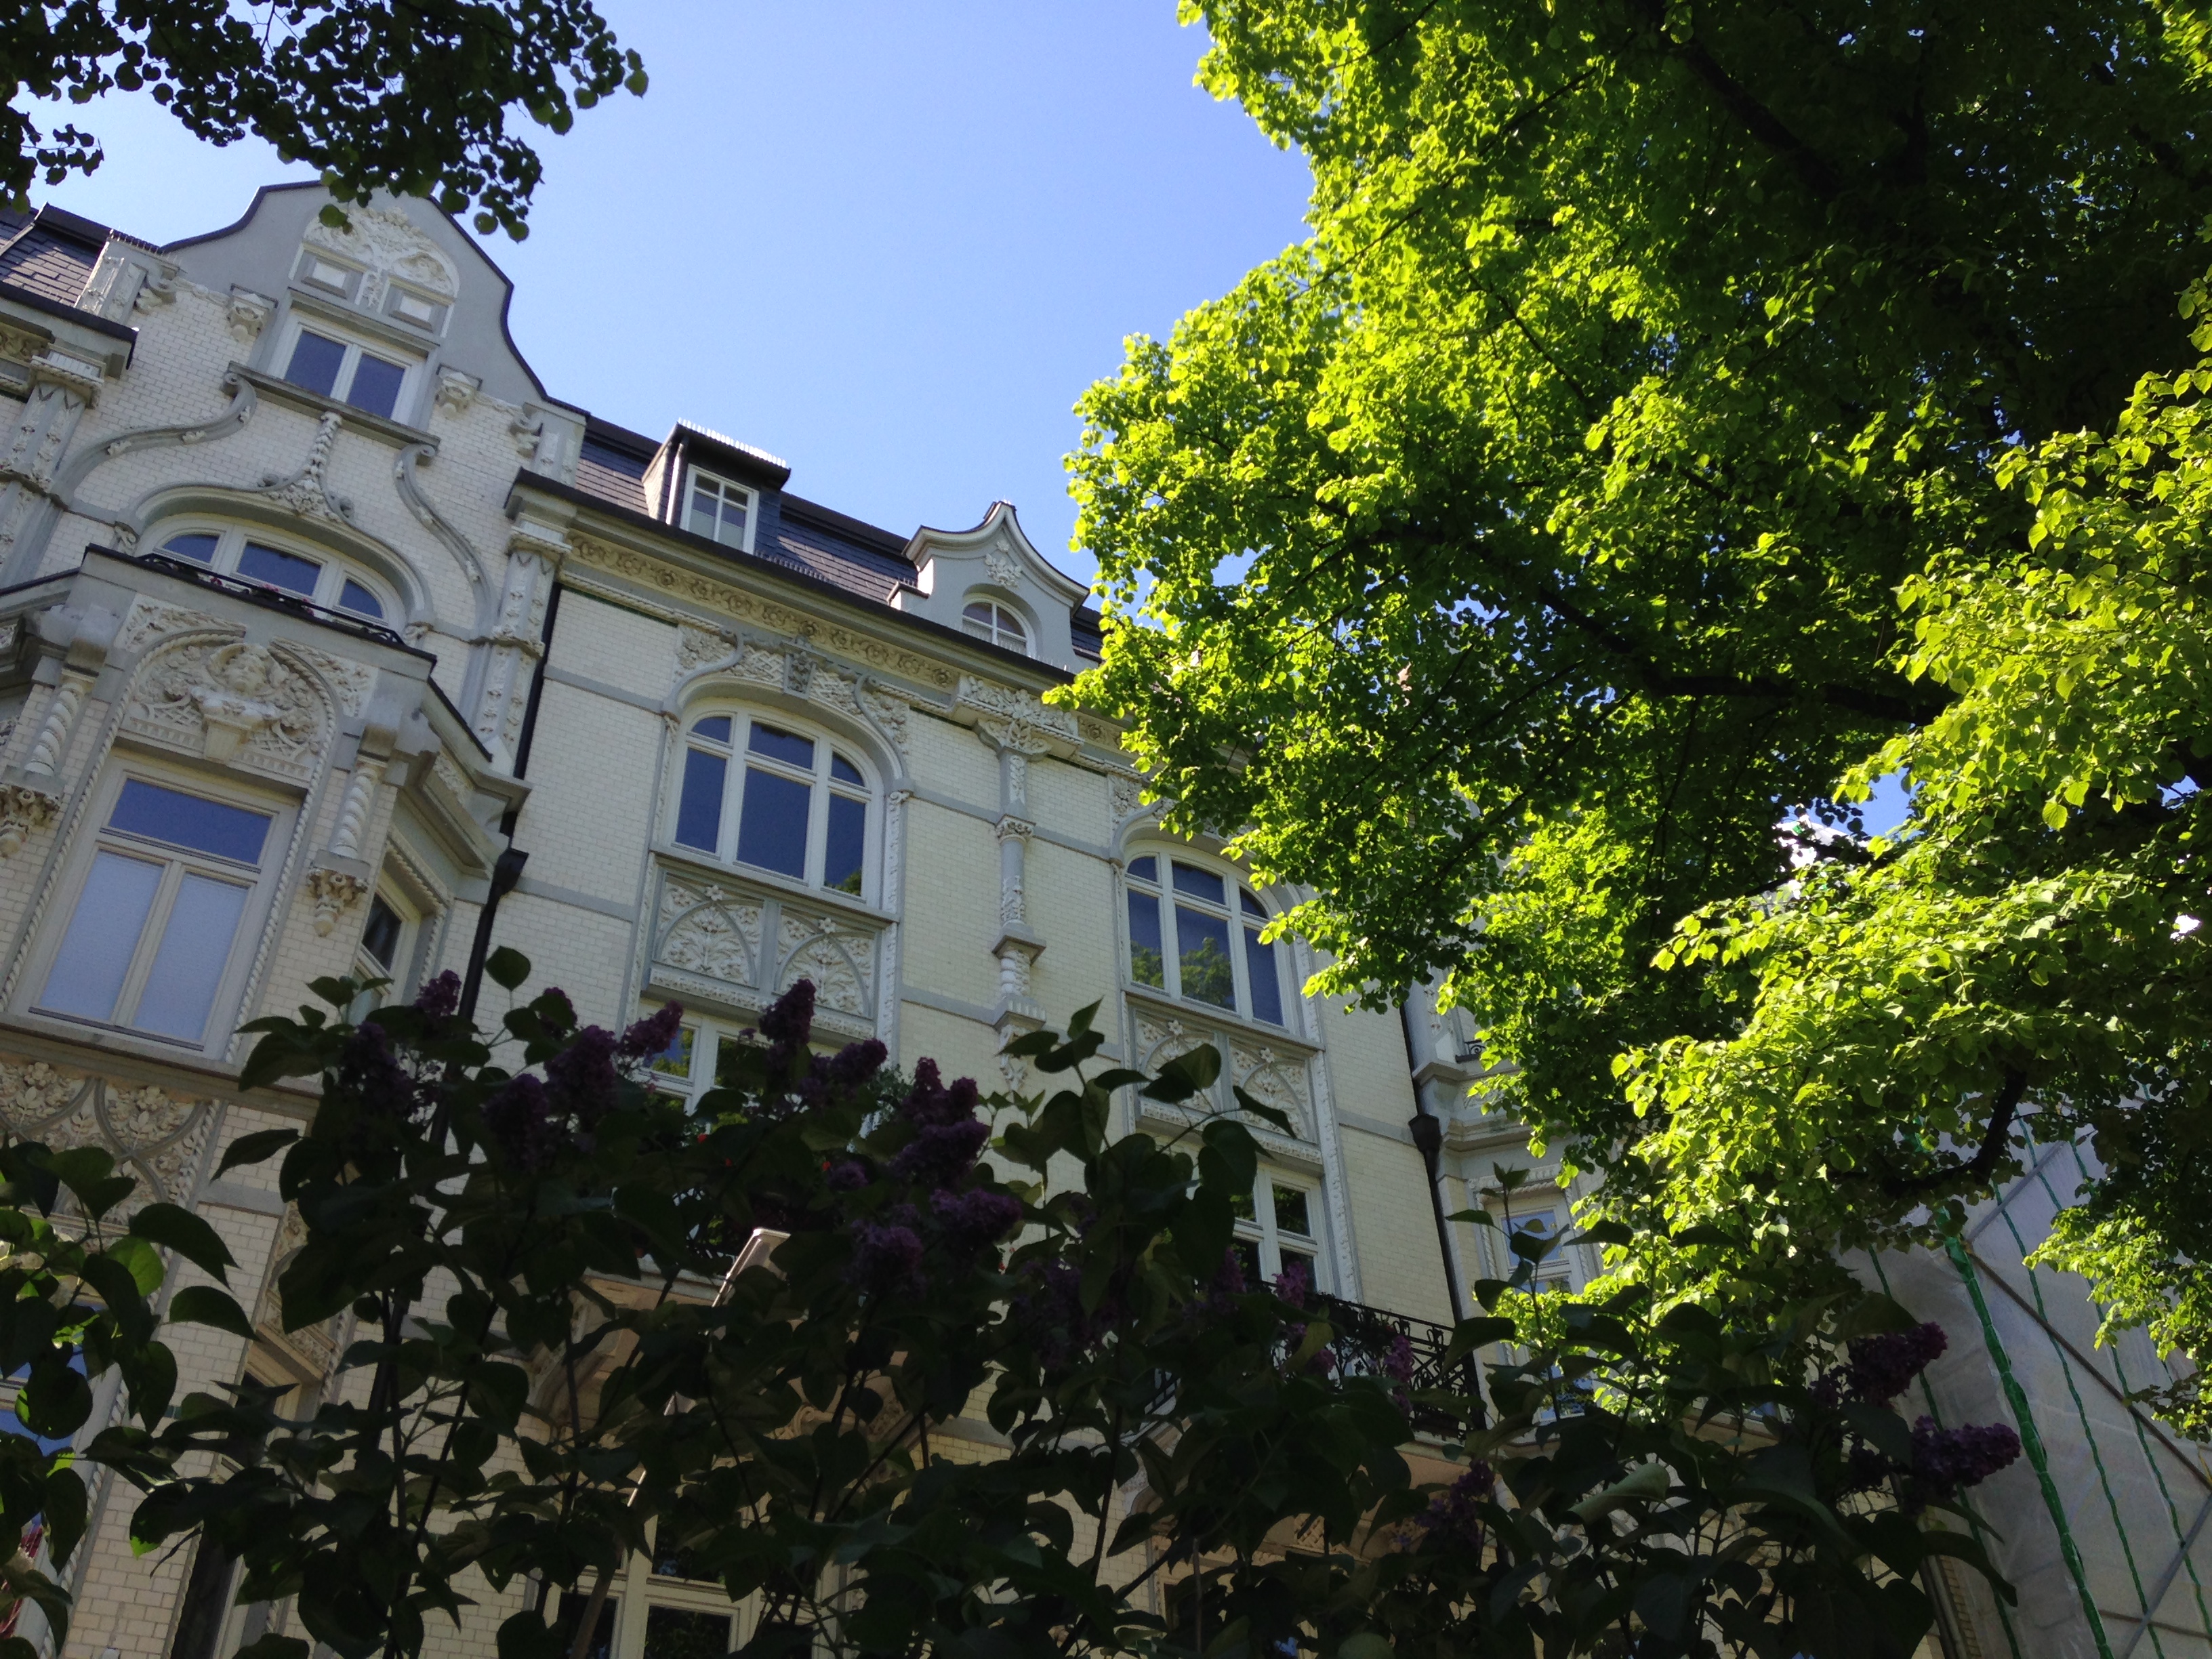 Checkliste und Tipps für die Wohnungssuche, Wohnungsbesichtigung und Bewerbung um eine Wohnung in Großstädten wie Hamburg, Berlin und München